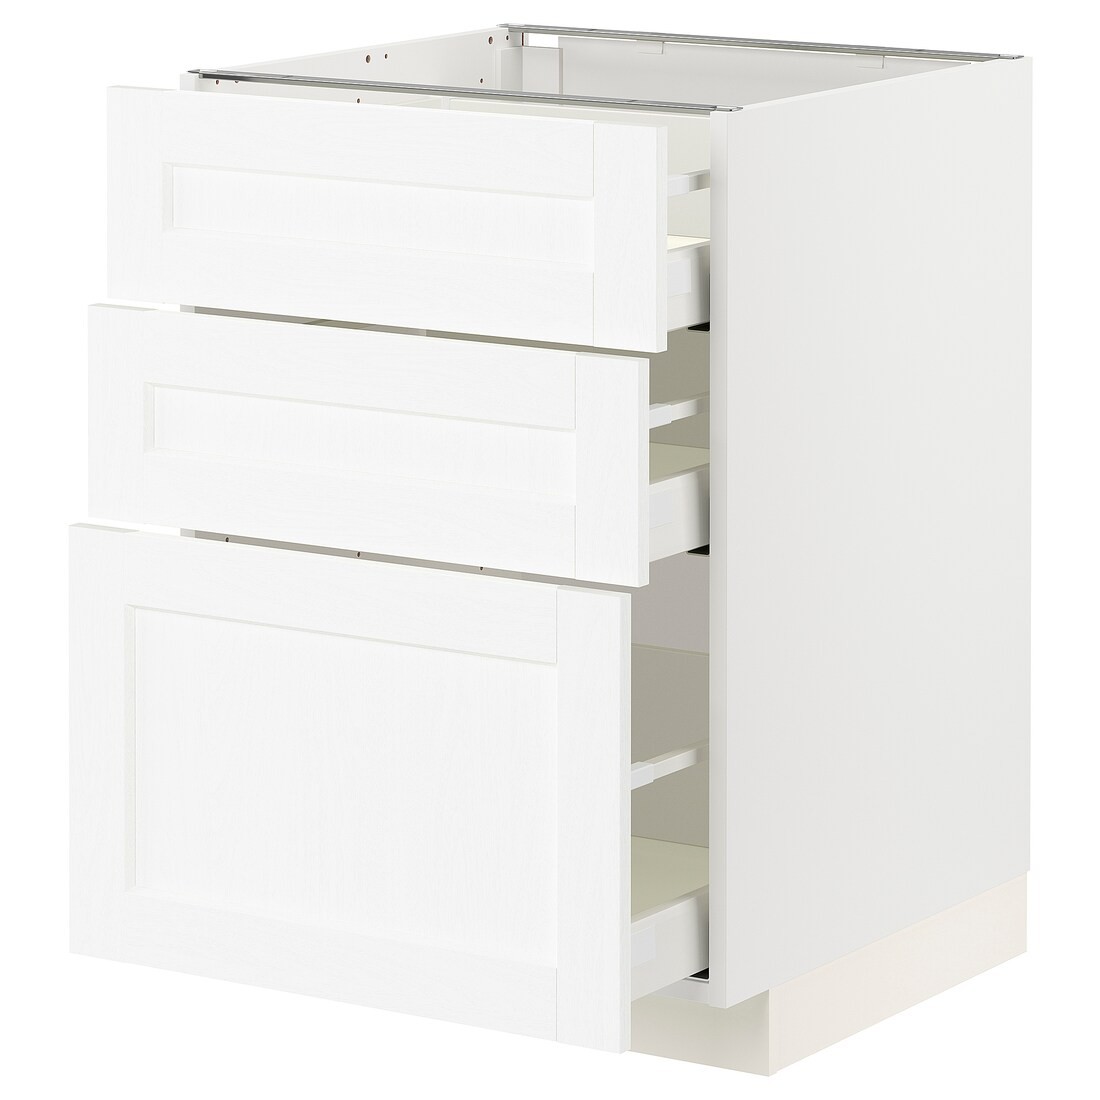 METOD МЕТОД / MAXIMERA МАКСИМЕРА Напольный шкаф с 3 ящиками, белый Enköping / белый имитация дерева, 60x60 см